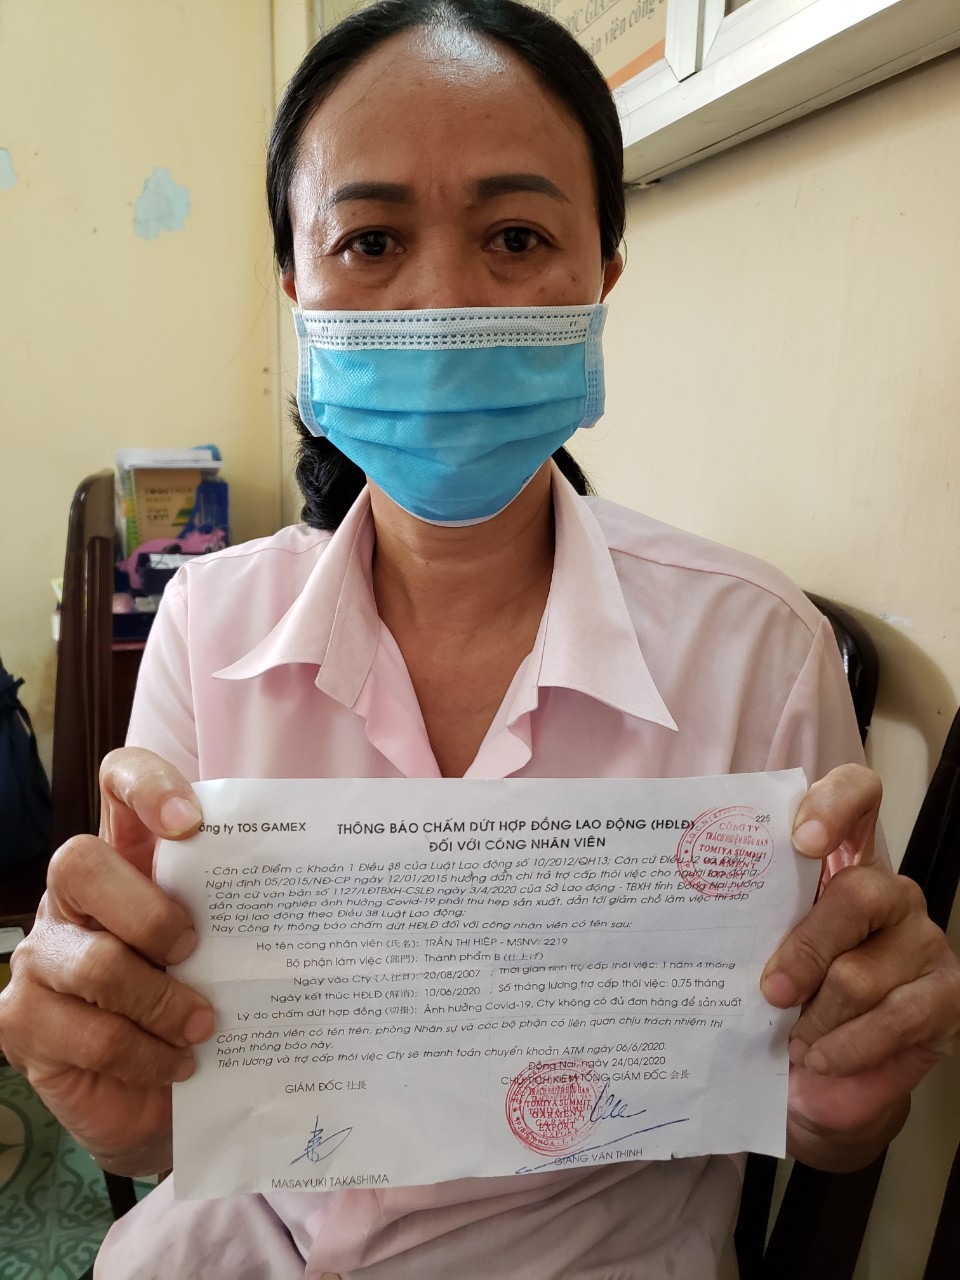 Bà Trần Thị Hiệp, 50 tuổi, công nhân công ty TNHH Tomiya Summit Garment Export, KCN Long Bình, TP.Biên Hoà, Đồng Nai với mảnh giấy thông báo chấm dứt hợp đồng lao động trên tay_Ảnh: HÀ ANH CHIẾN